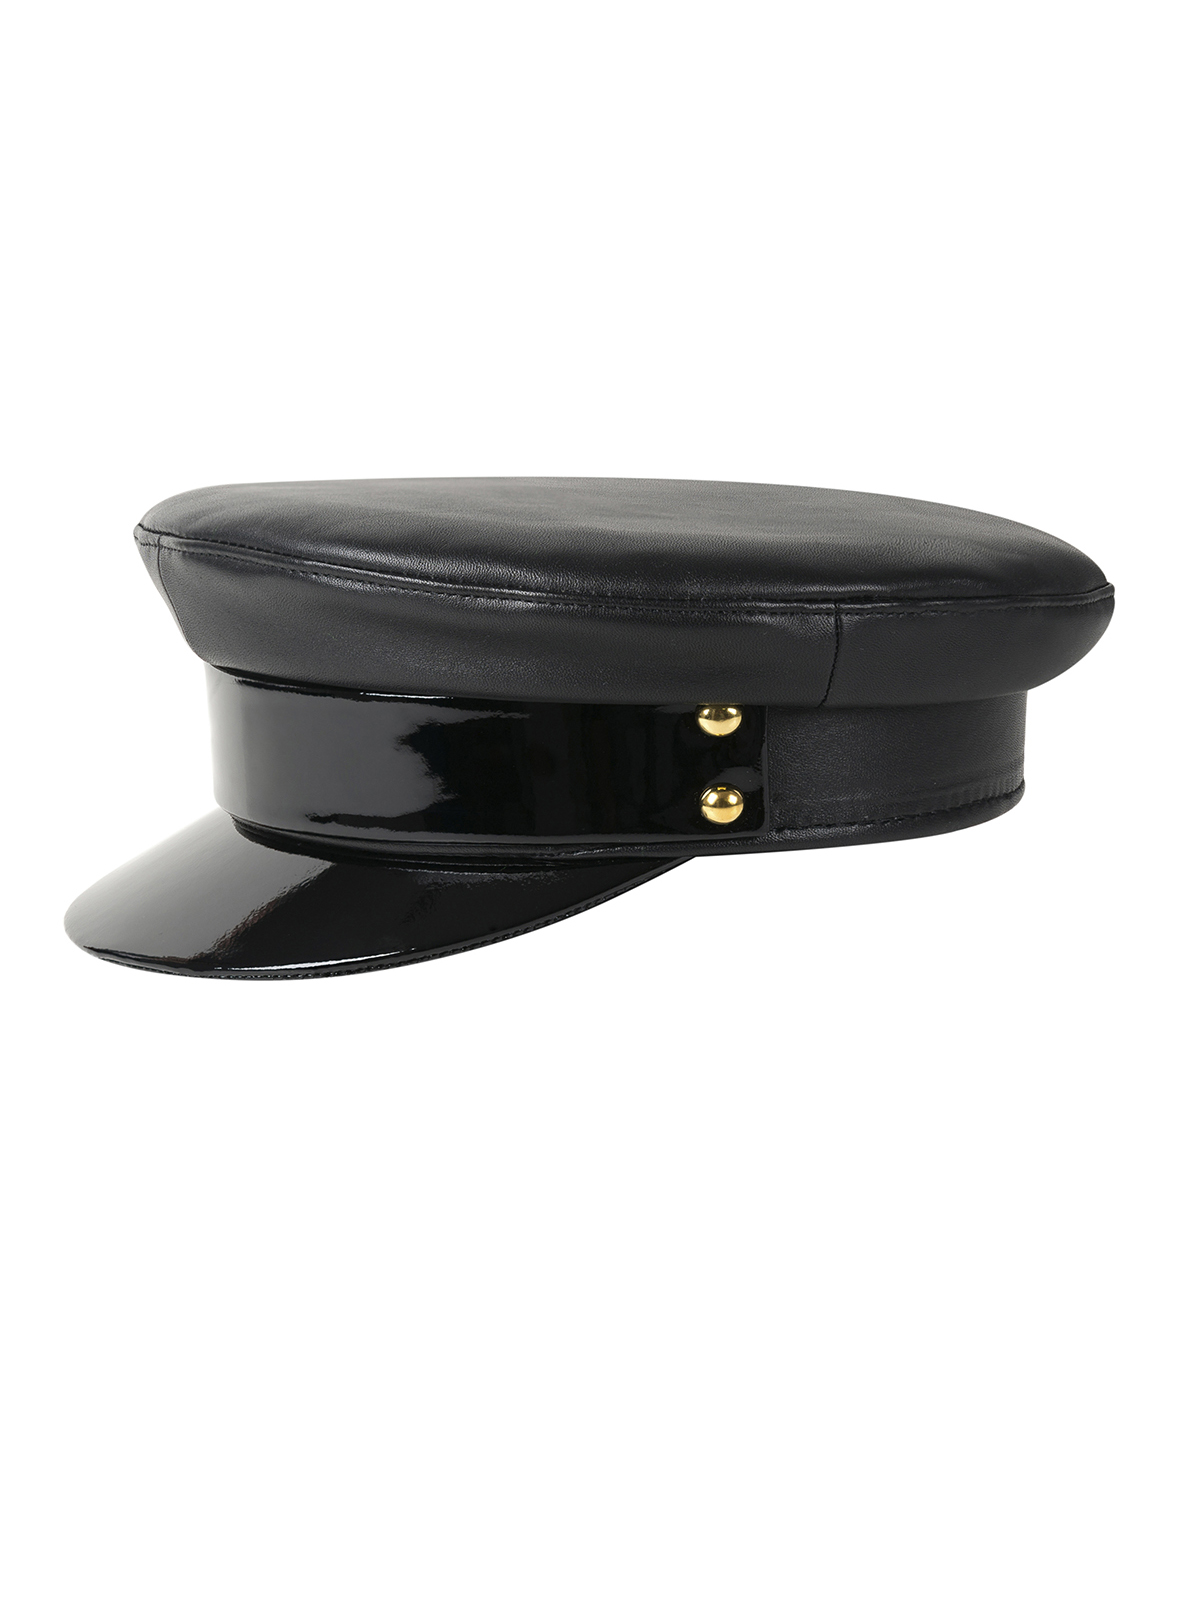 OFFICER ’S  CAP